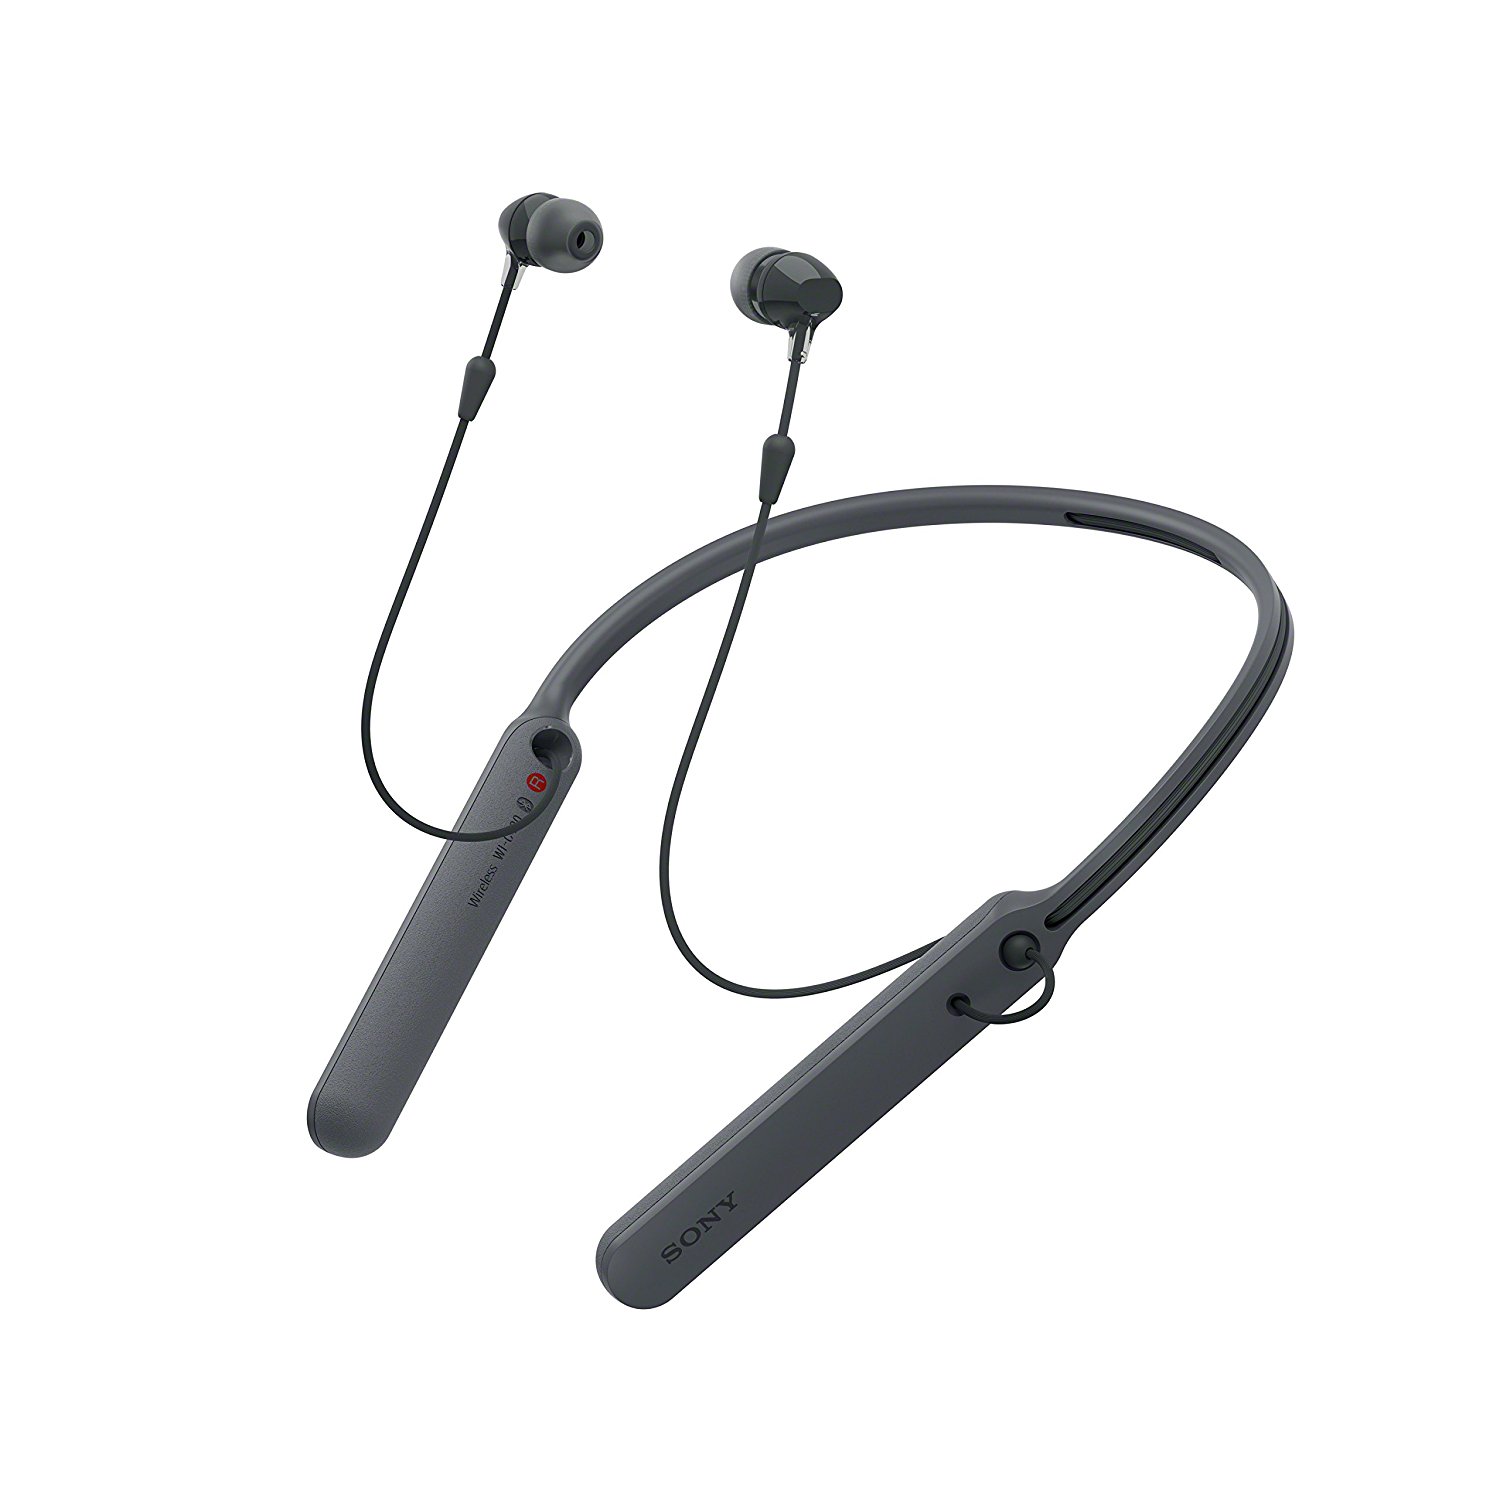 Tai nghe Sony in ear WI-C400 chính hãng giá tốt tại Songlongmedia